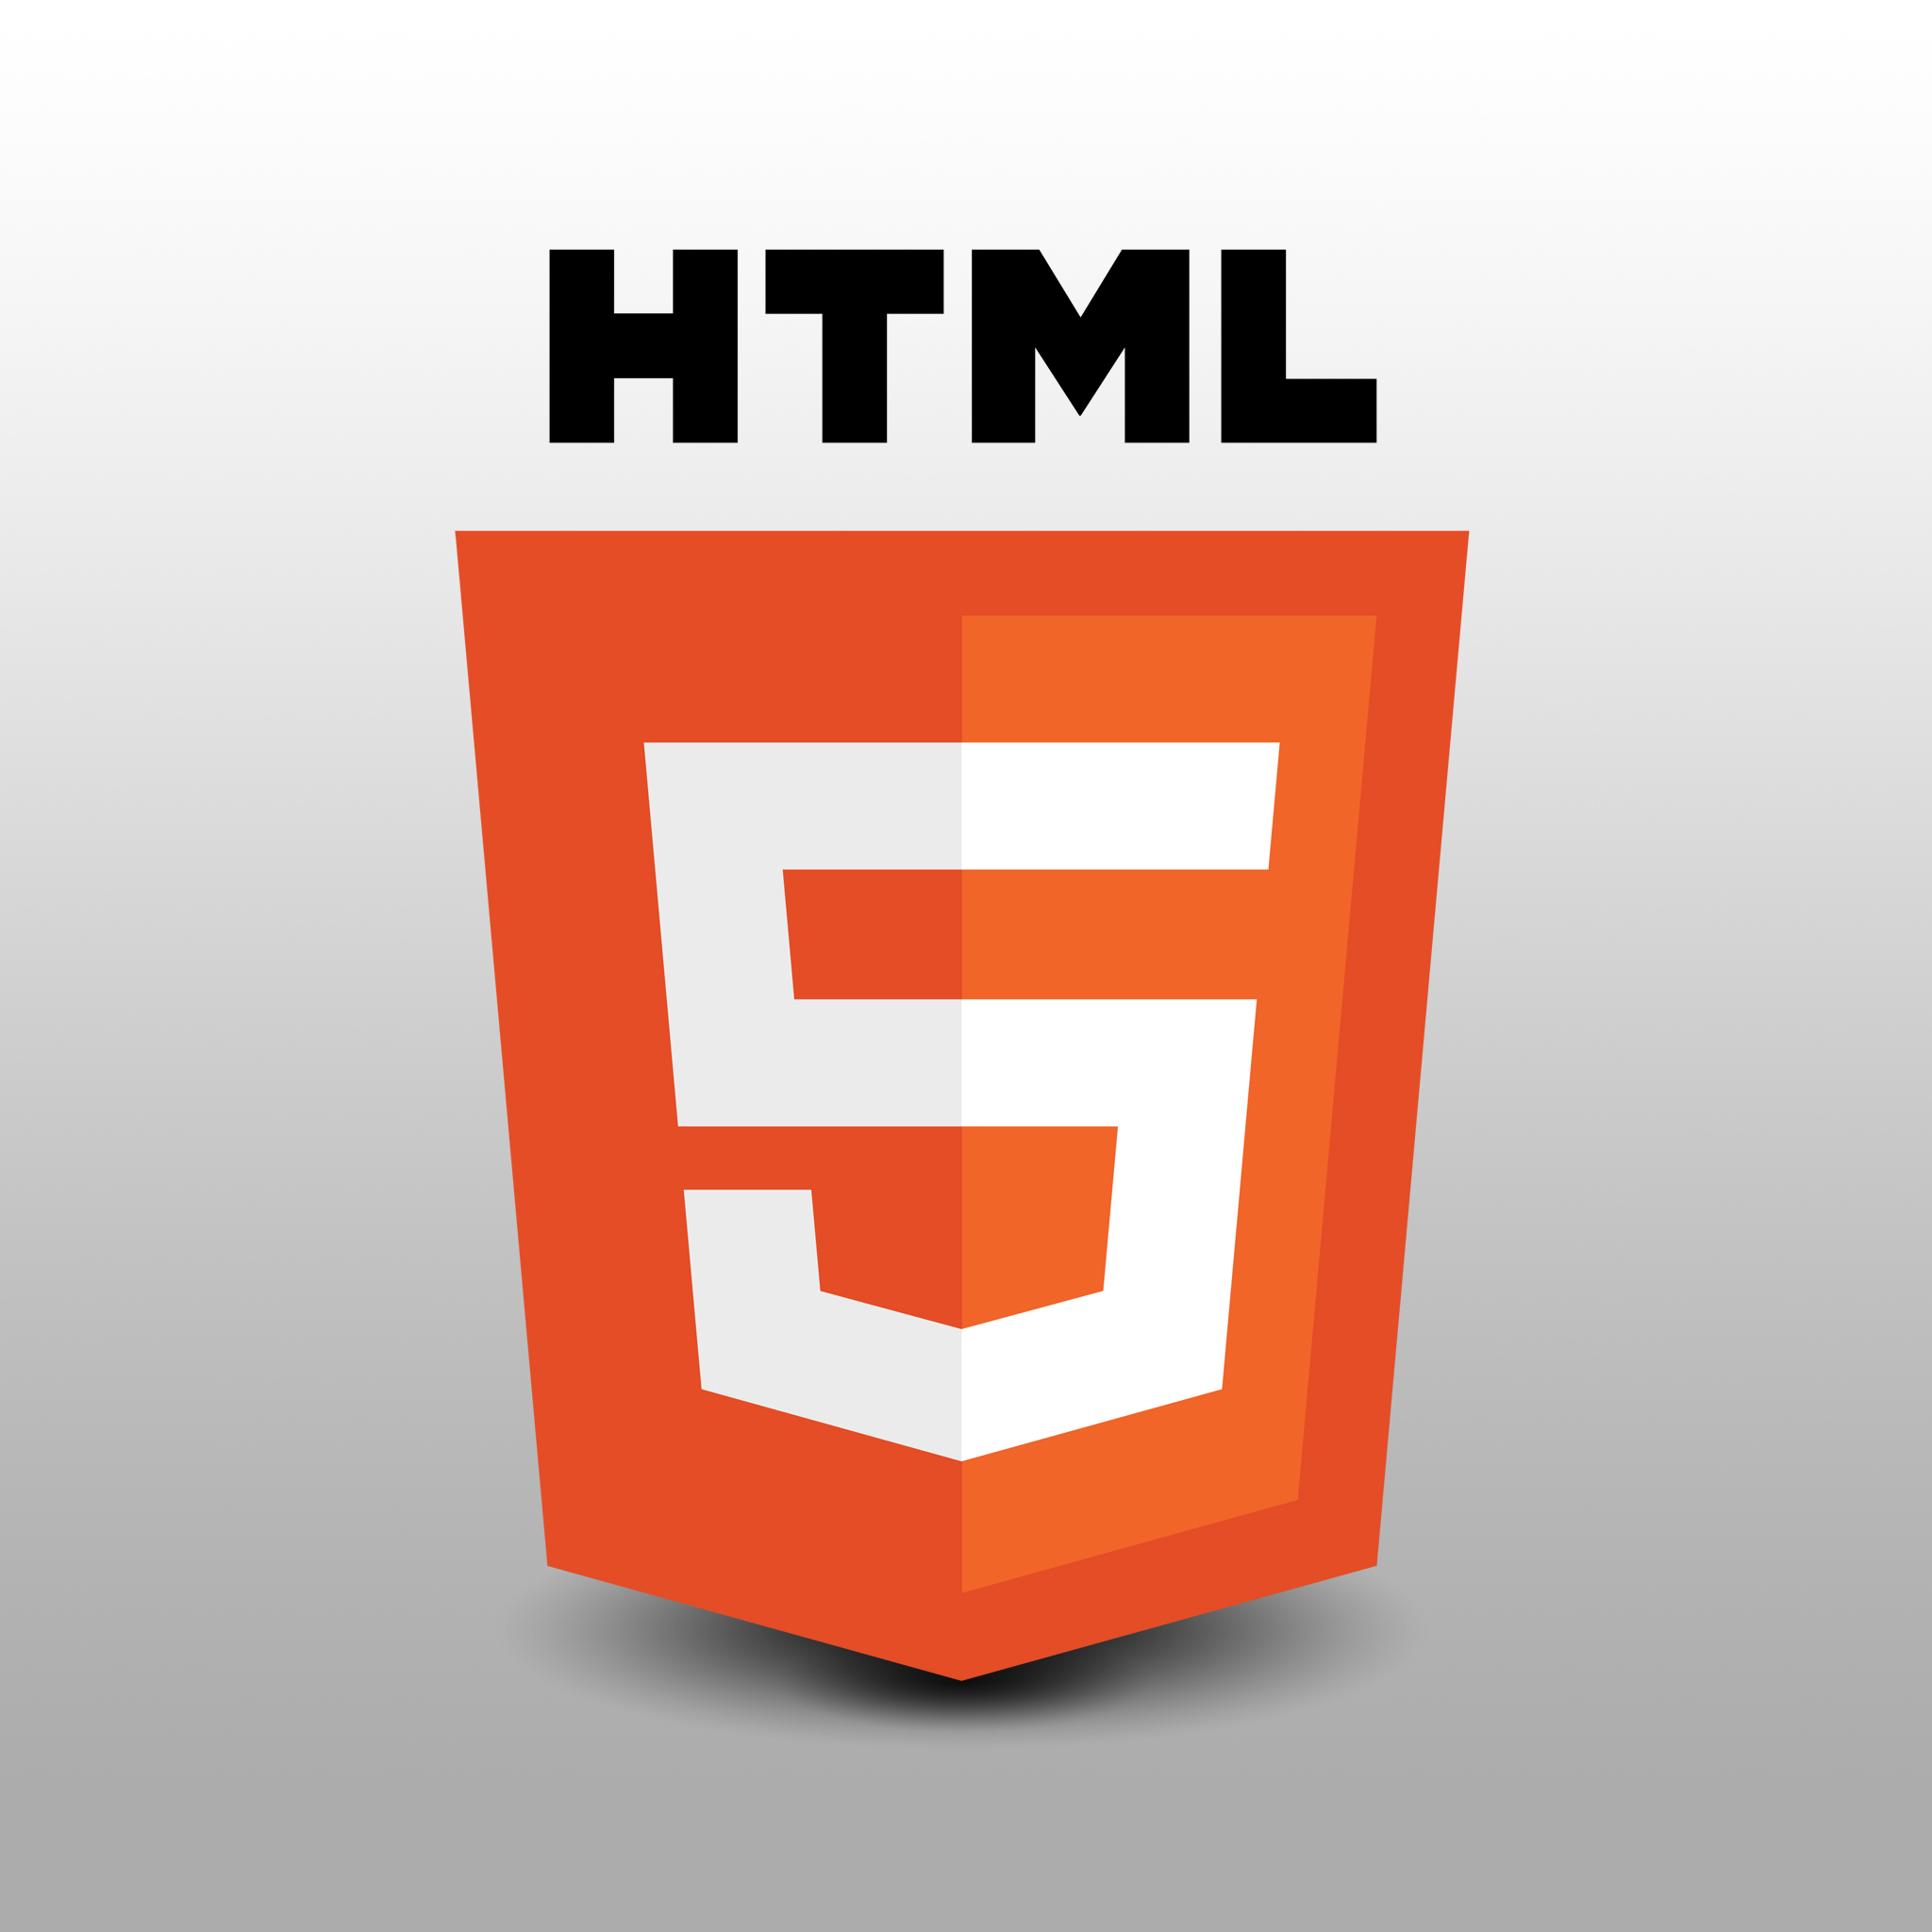  آموزش HTML 5 ( قسمت 1 )